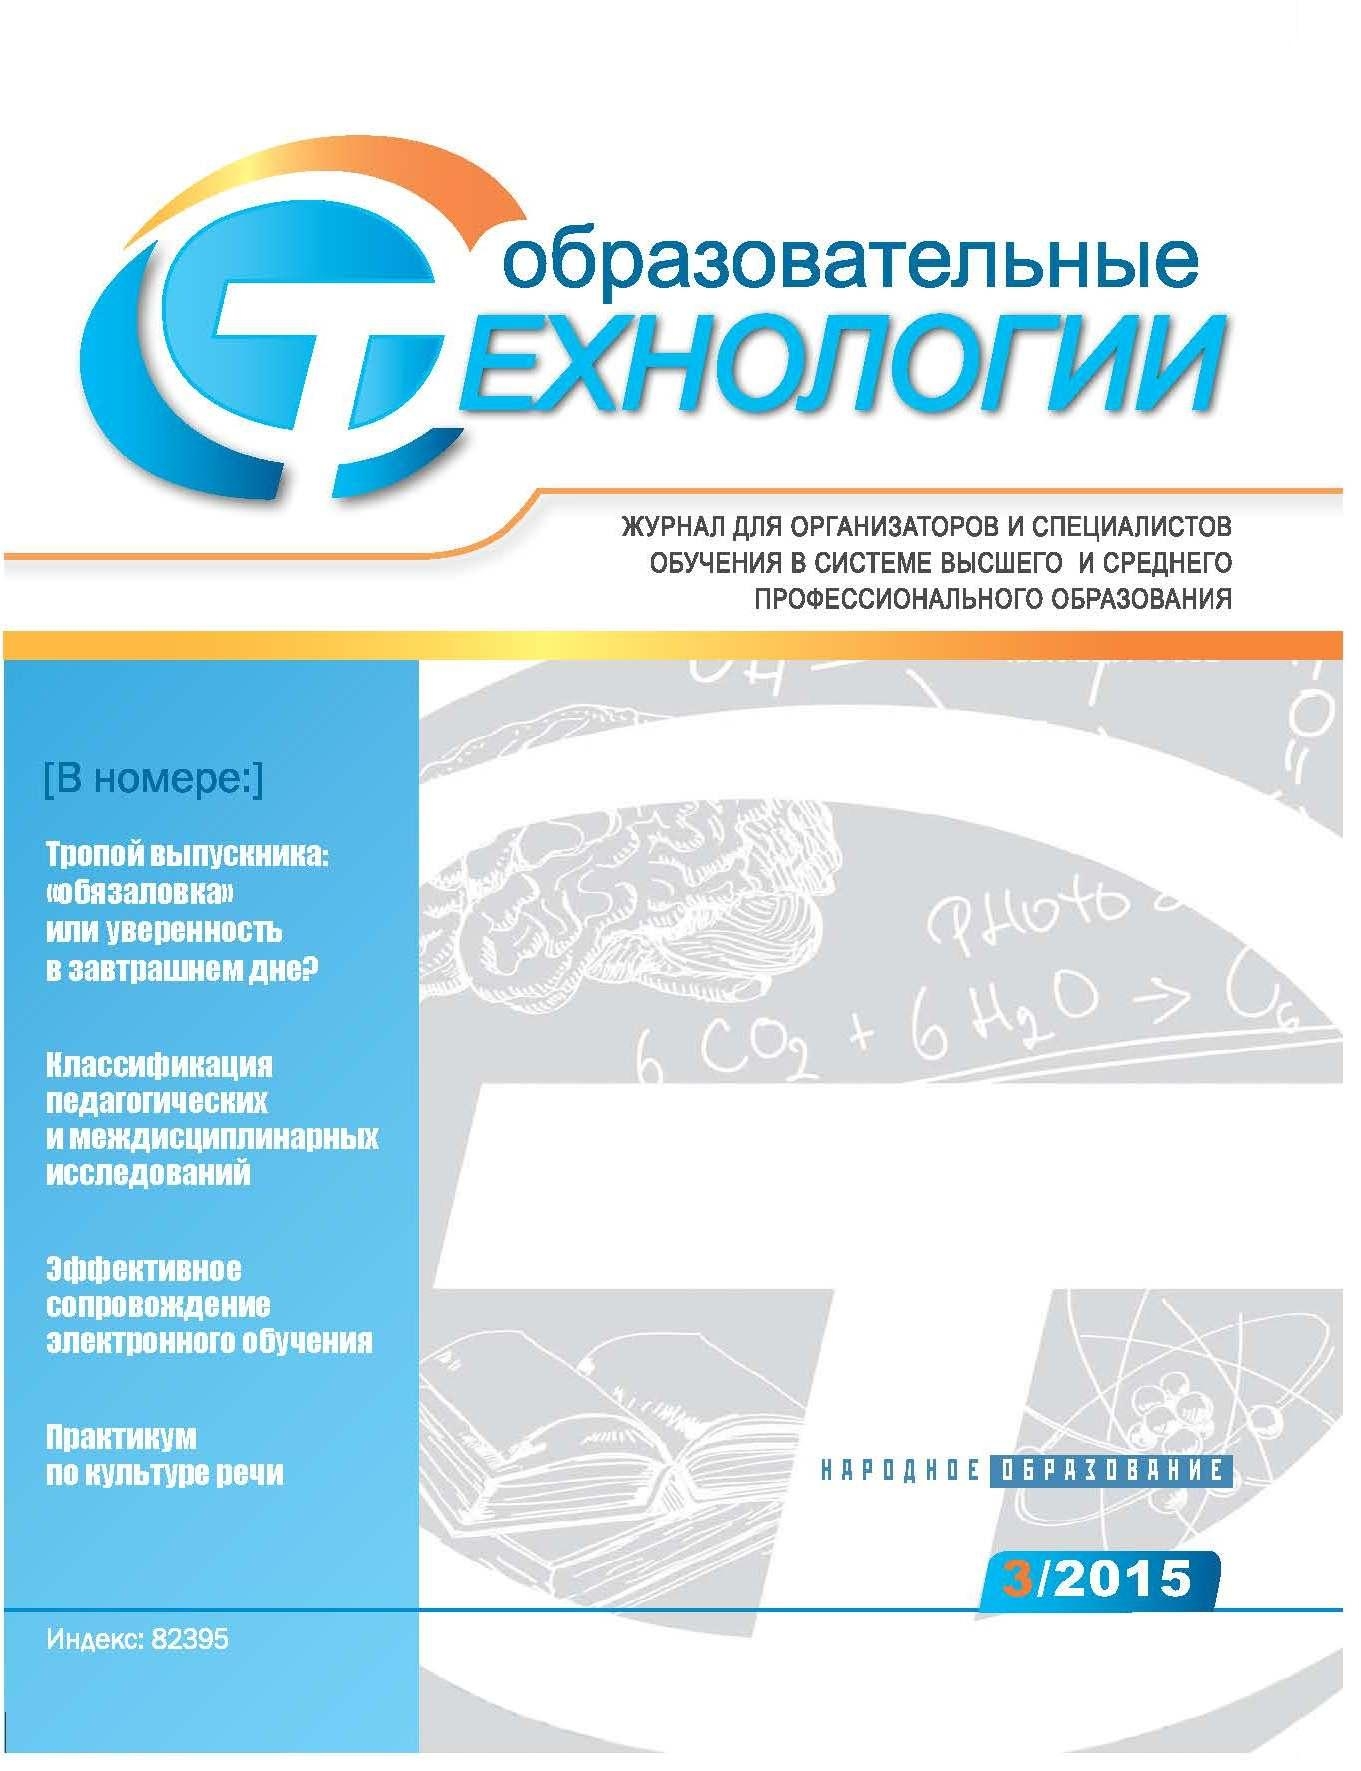 Опубликован №3 журнала «Образовательные технологии» за 2015 г.